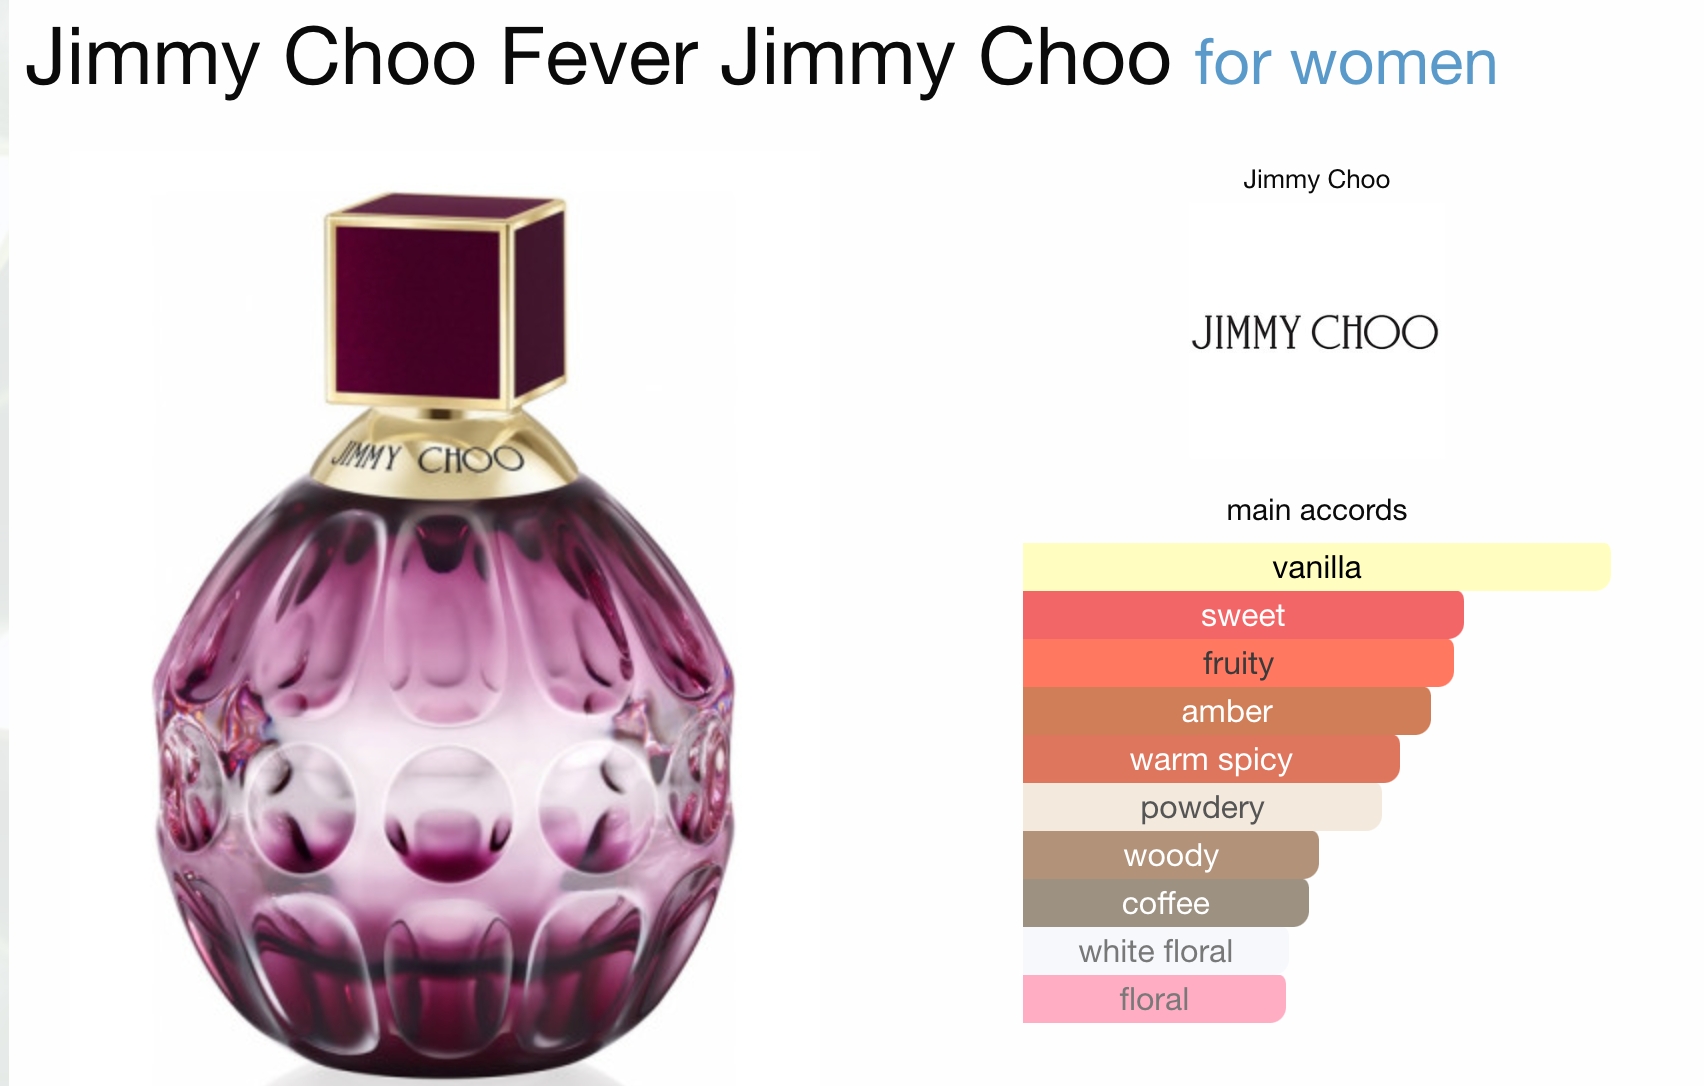 JIMMY CHOO Fever EDP ingredients